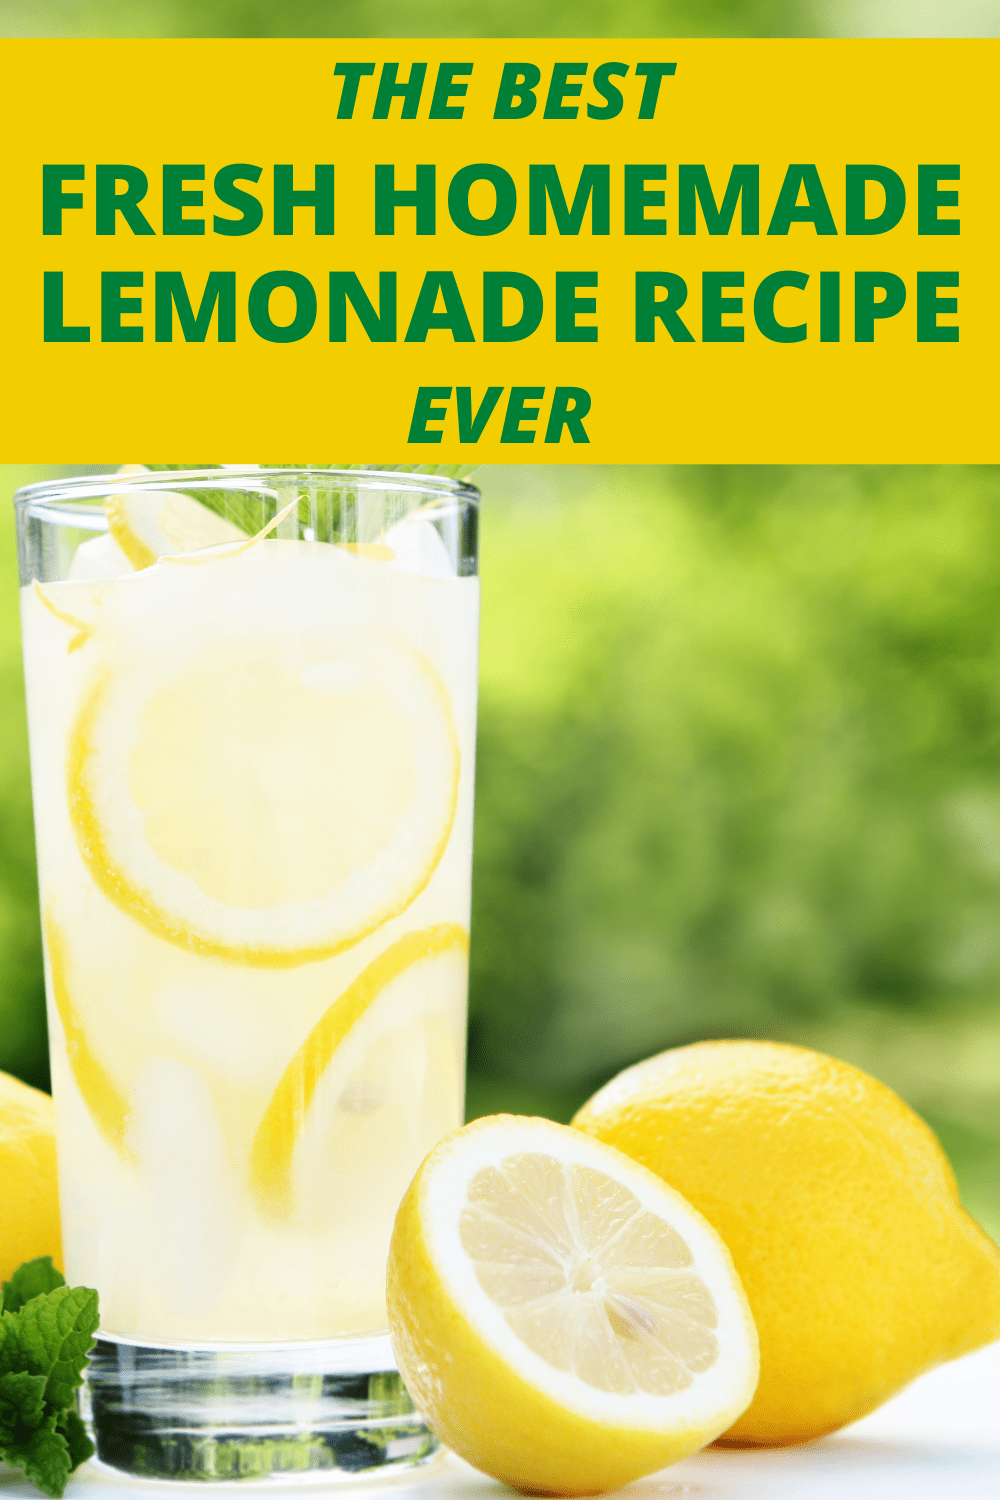 LEMONADE RECIPE HOMEMADE (simple lemonade recipe) with lemons on a table outside